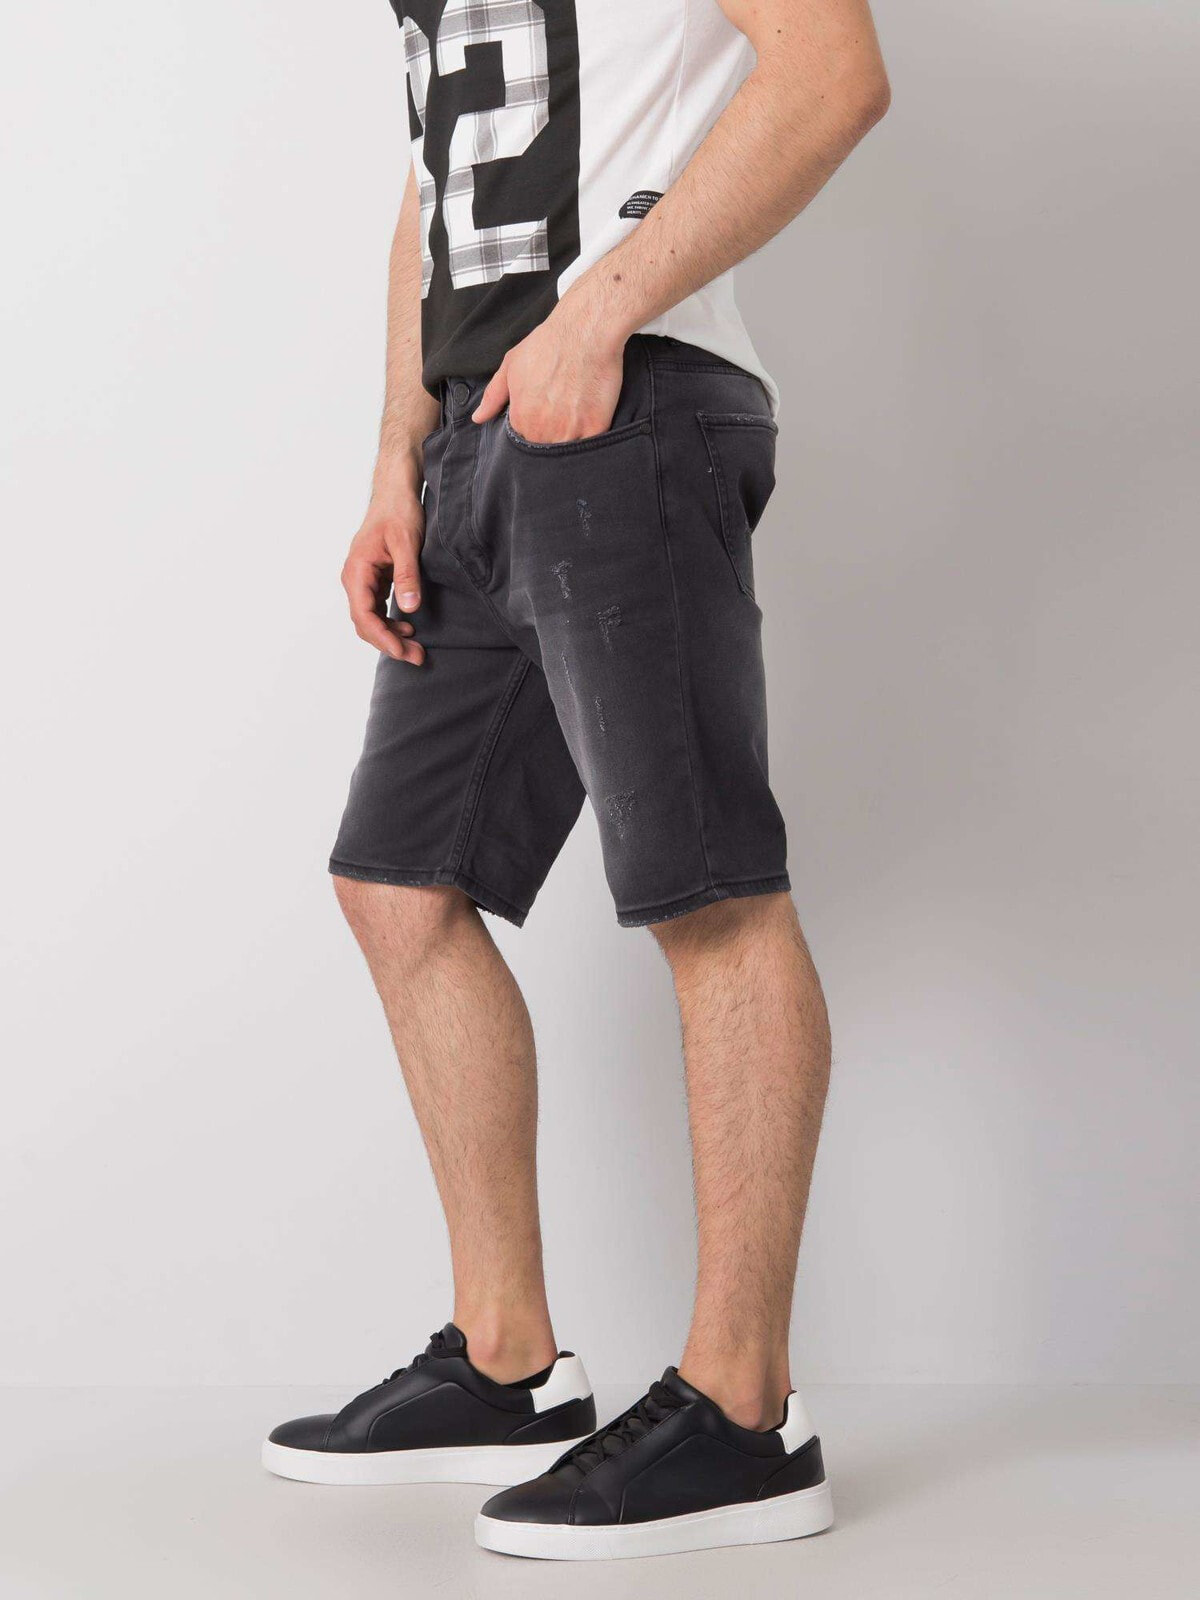 Мужские шорты черные джинсовые длинные FactoryPrice-MH-SN-3003-1.71P-czarny цвет черный размер M — купить недорого сдоставкой, 44713